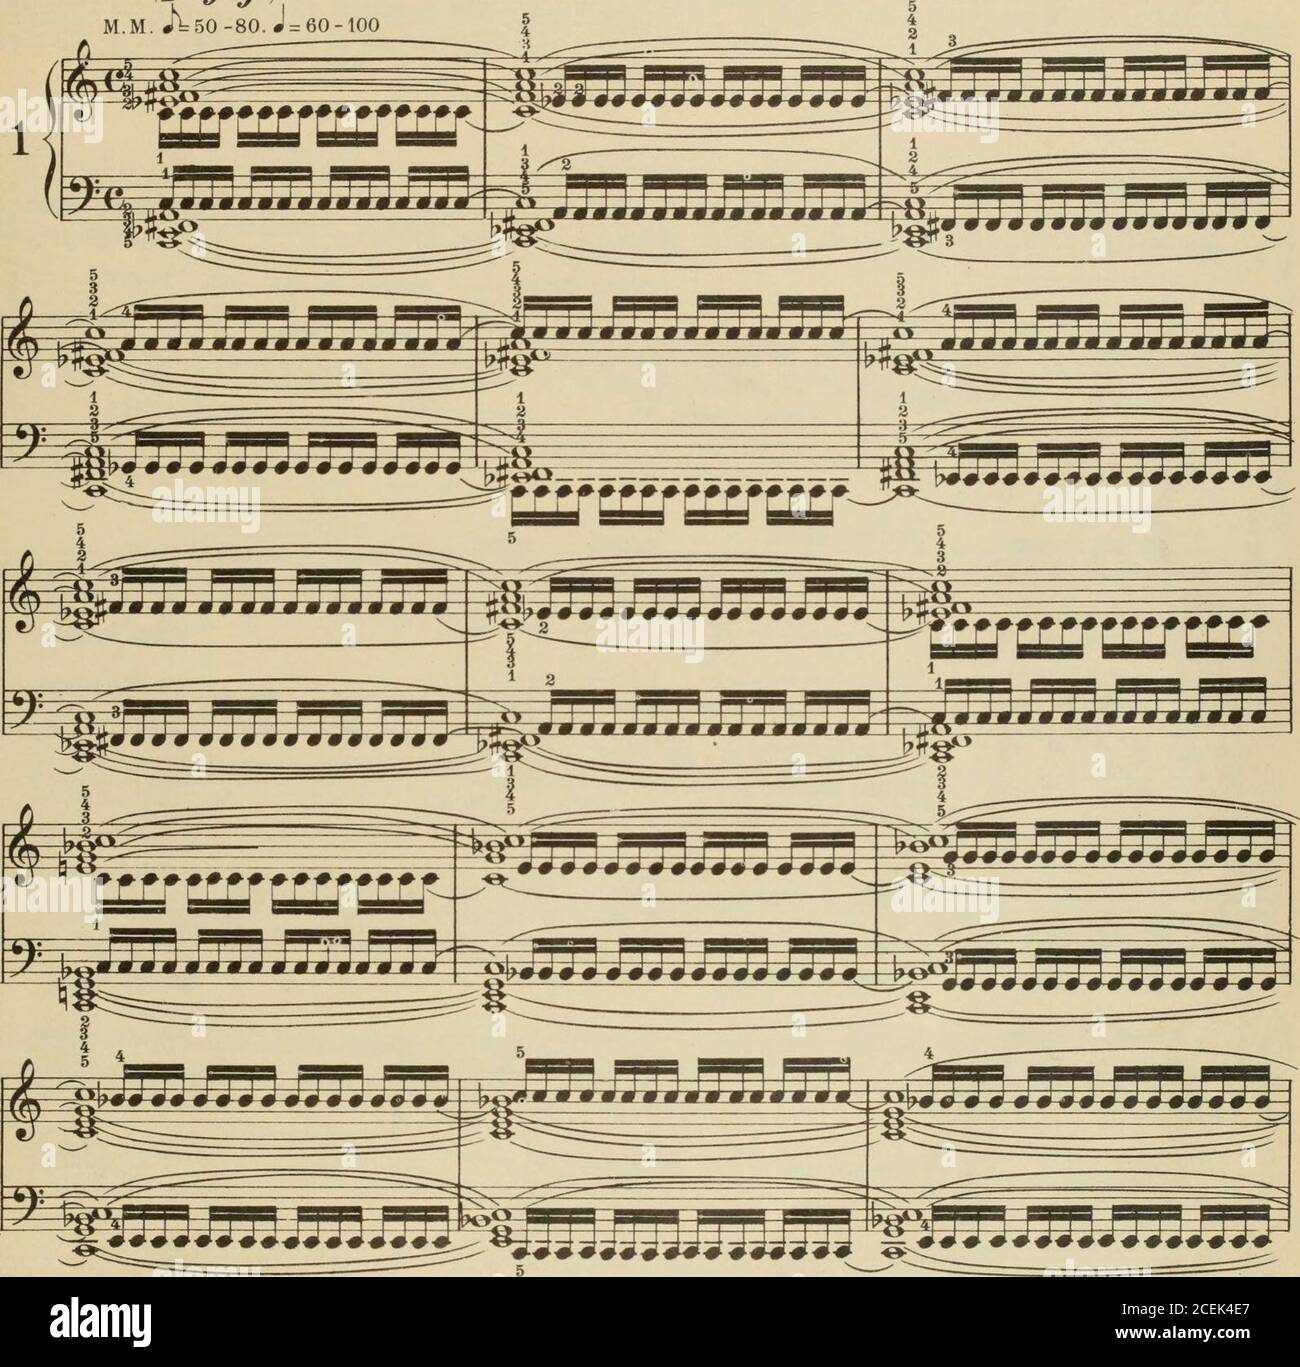 Escuela completa de técnica para el pianoforte : incluyendo flexibilidad e  independencia, escalas en todas las formas, extensión, arpegios en todas  las formas, dobles notas, octavas y acordes, trinos, trémolo, glissando.